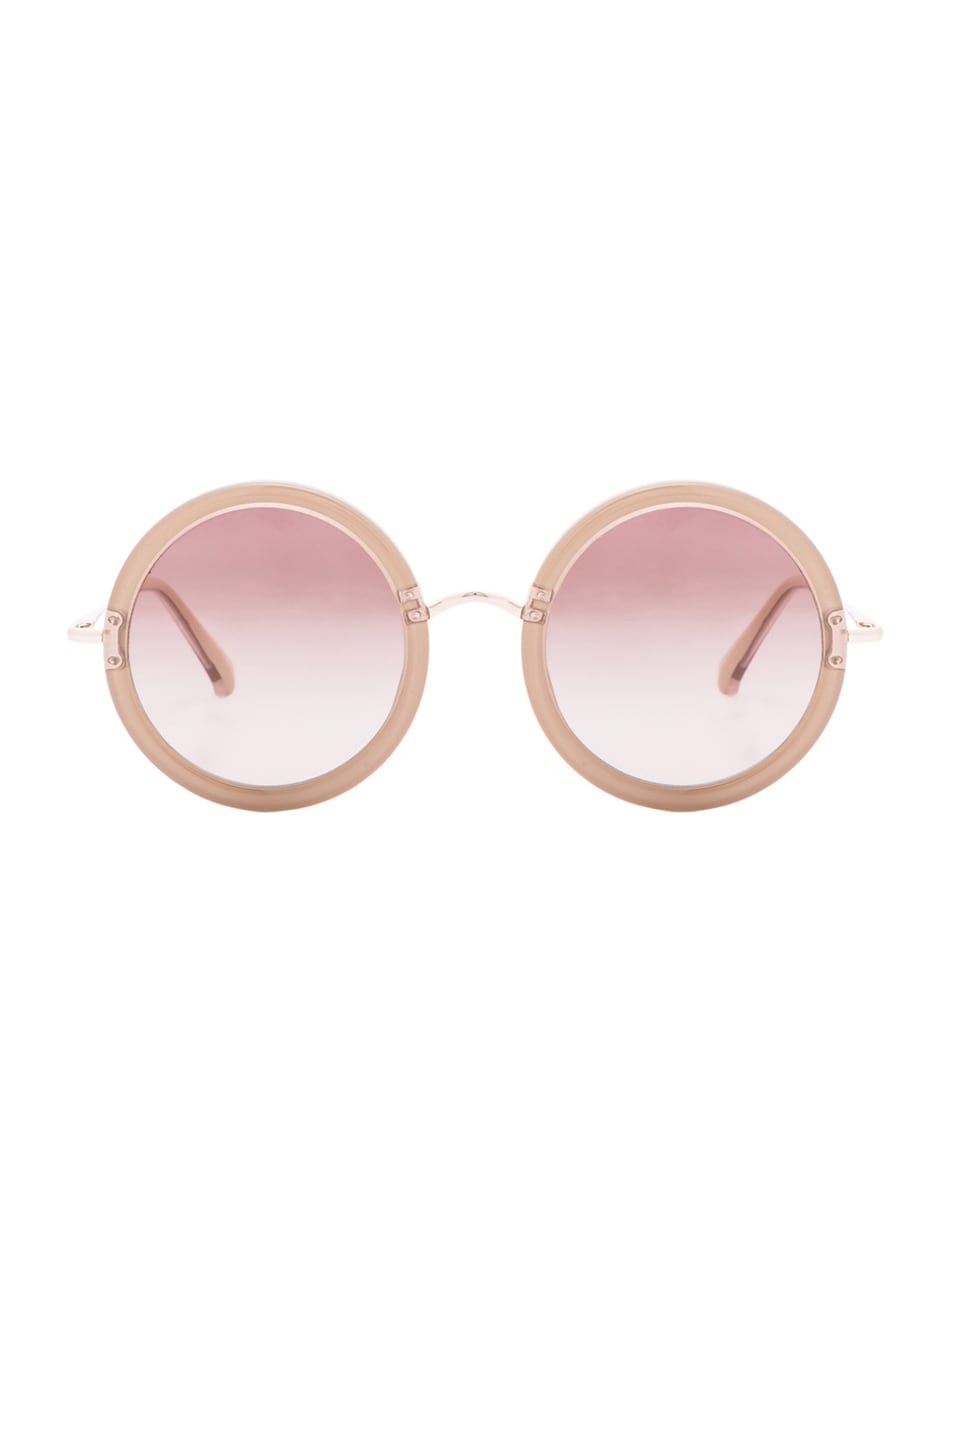 The Row Signature Circle Sunglasses in Mink & Cream | FWRD